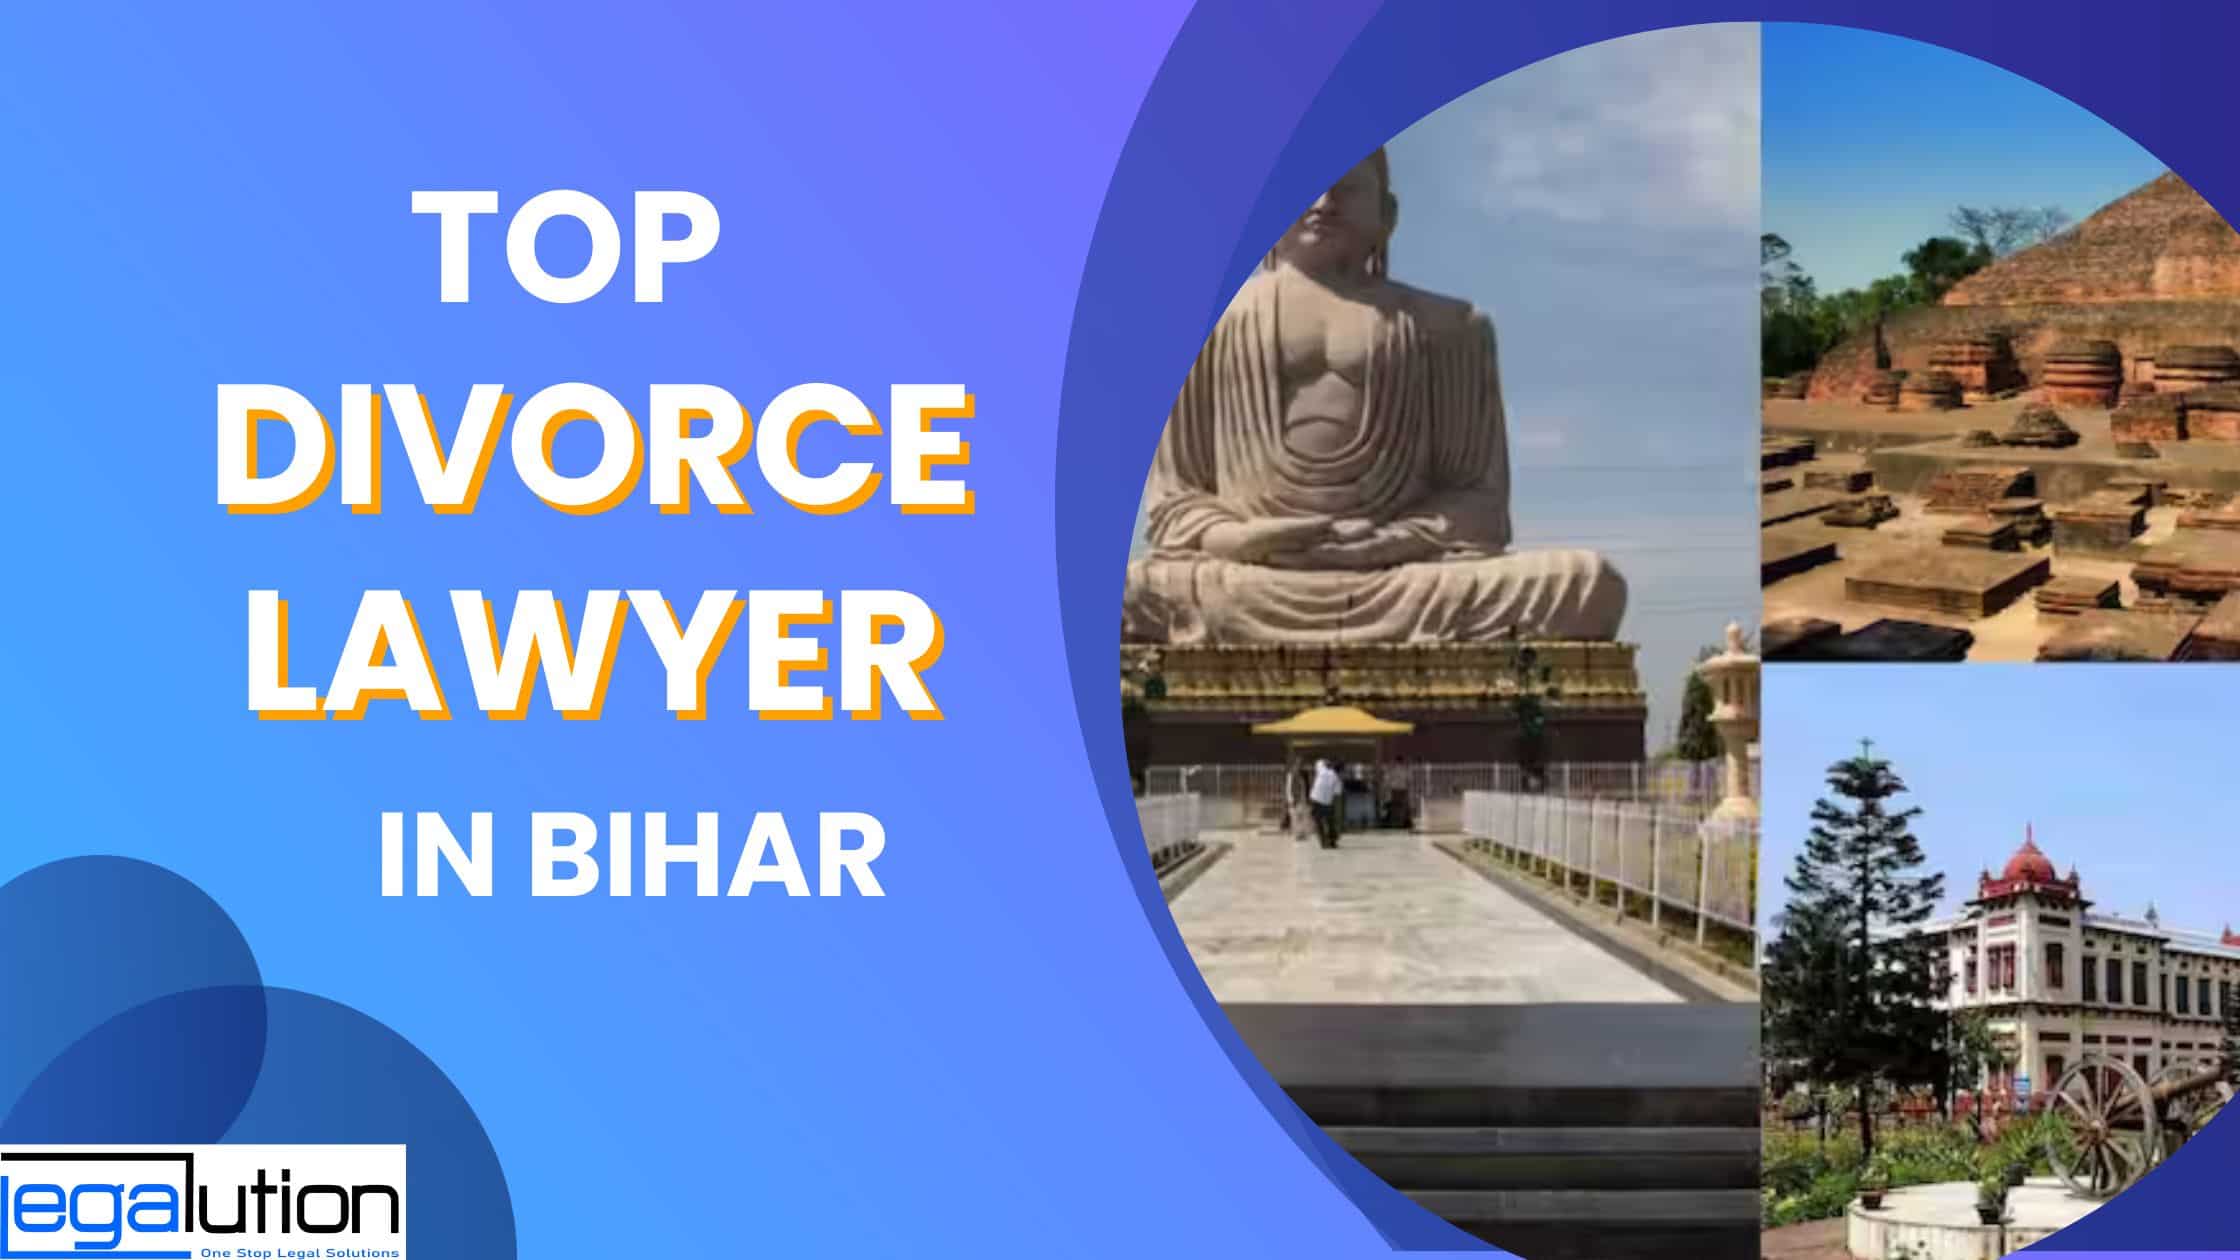 Top Divorce Lawyer in Bihar